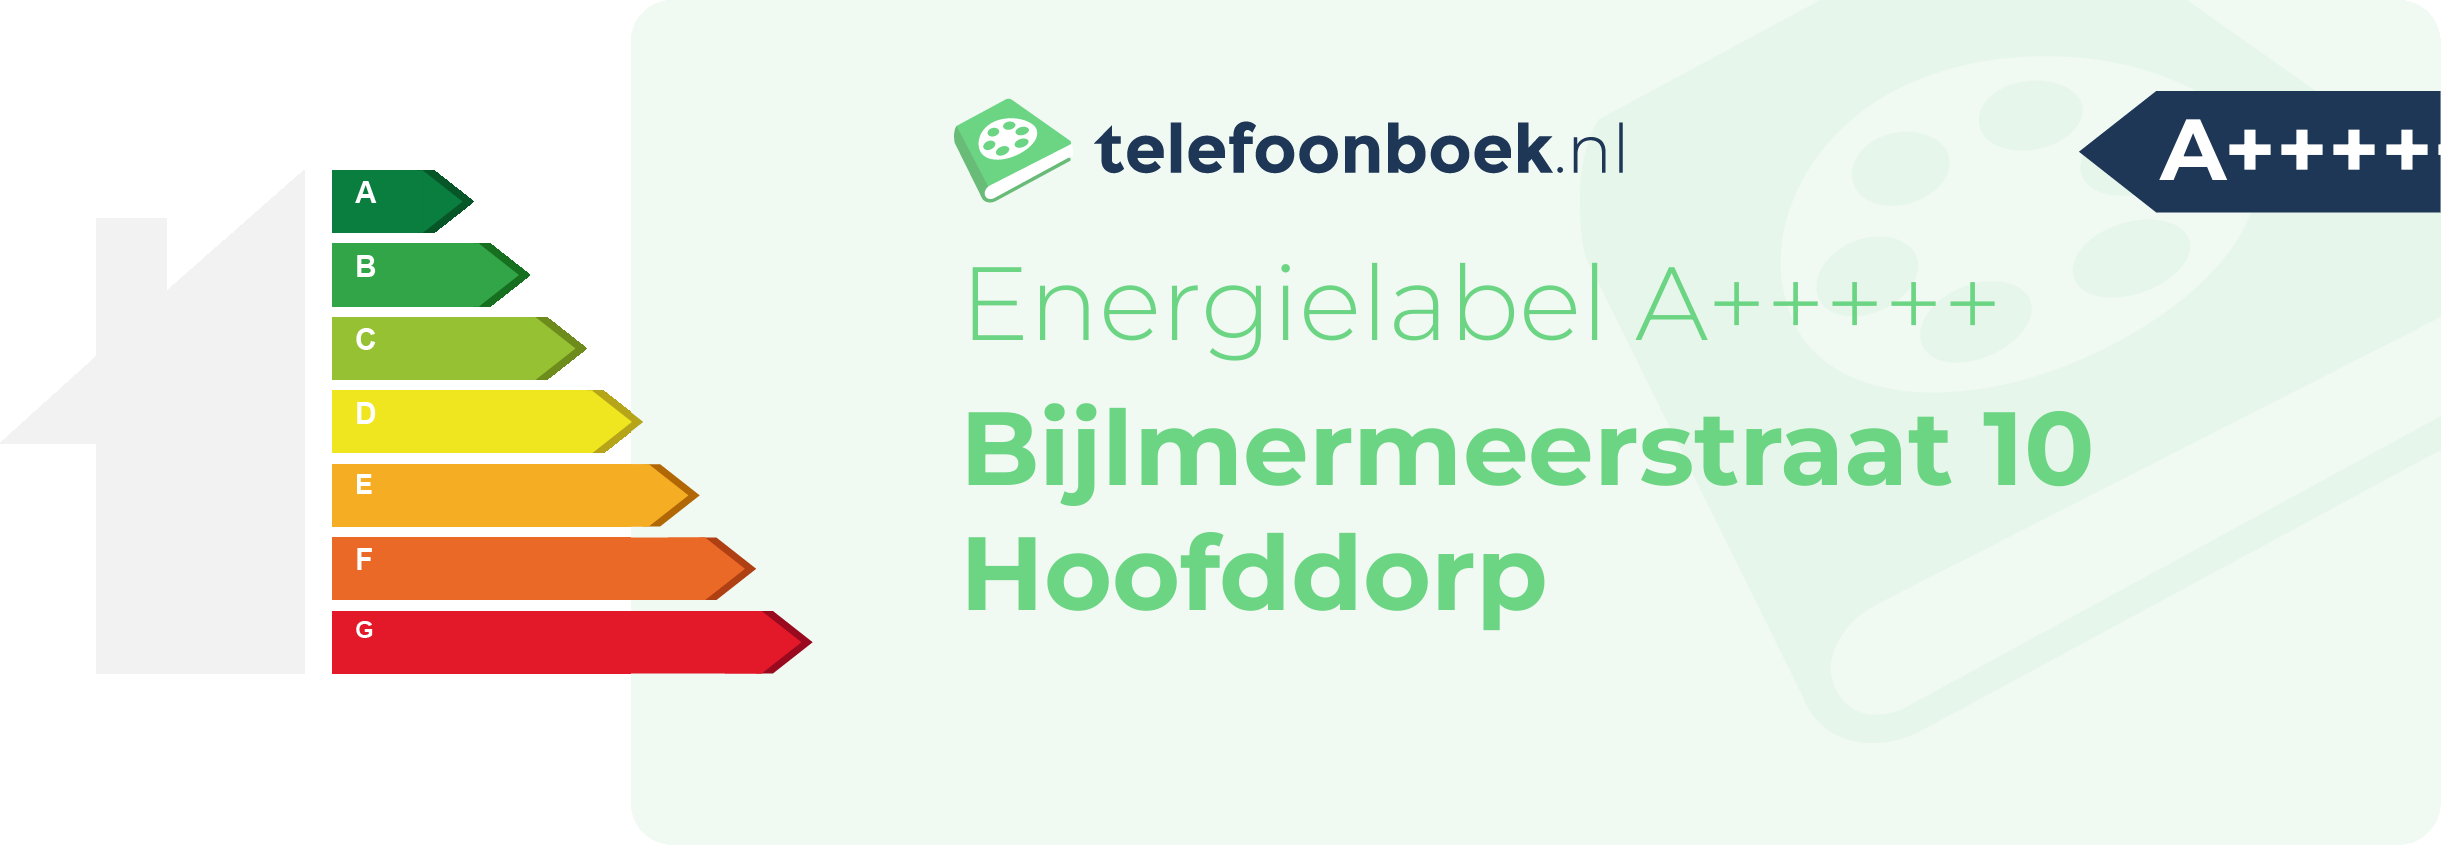 Energielabel Bijlmermeerstraat 10 Hoofddorp